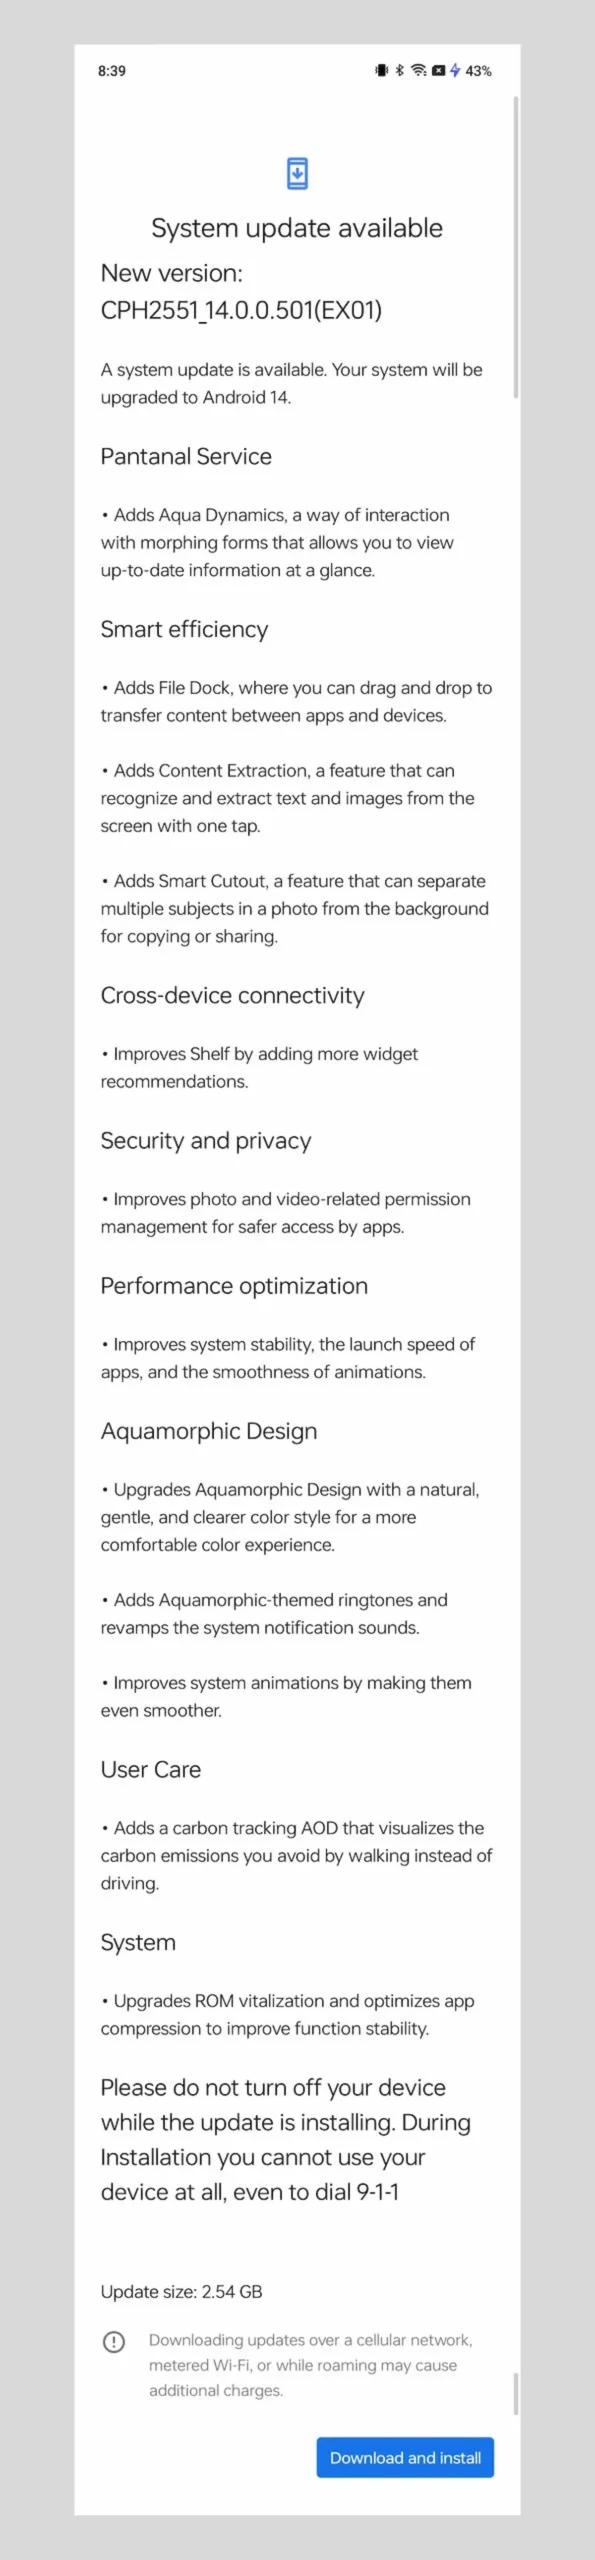 OnePlus Open já está recebendo o Android 14 nos EUA